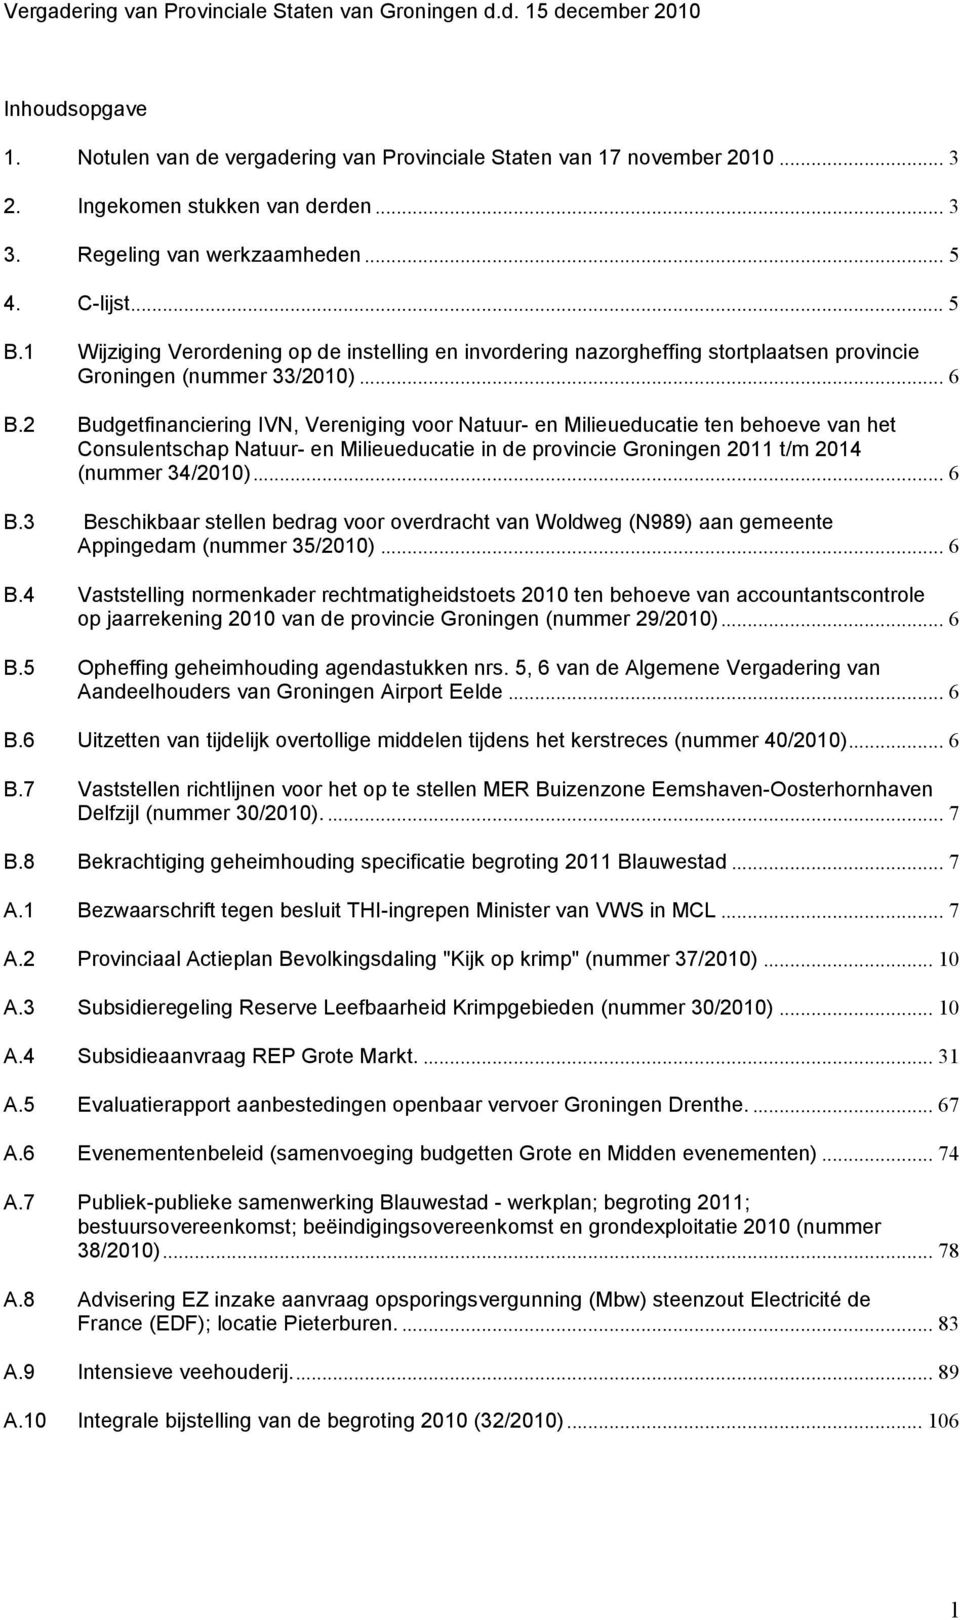 2 Budgetfinanciering IVN, Vereniging voor Natuur- en Milieueducatie ten behoeve van het Consulentschap Natuur- en Milieueducatie in de provincie Groningen 2011 t/m 2014 (nummer 34/2010)... 6 B.